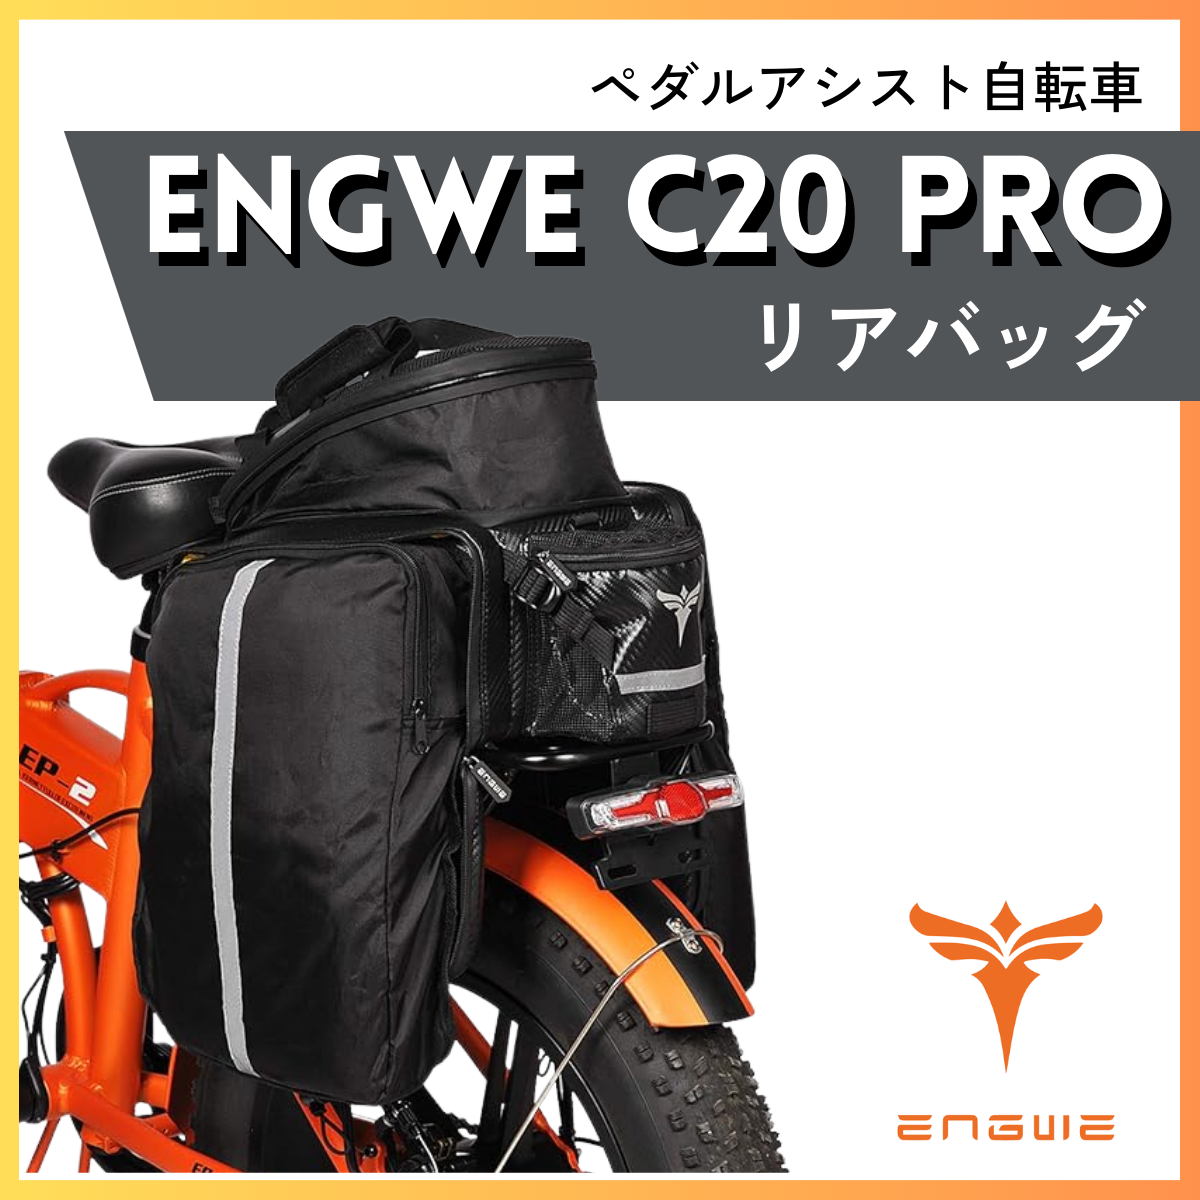 ENGWE C20 PRO専用 リアバッグ